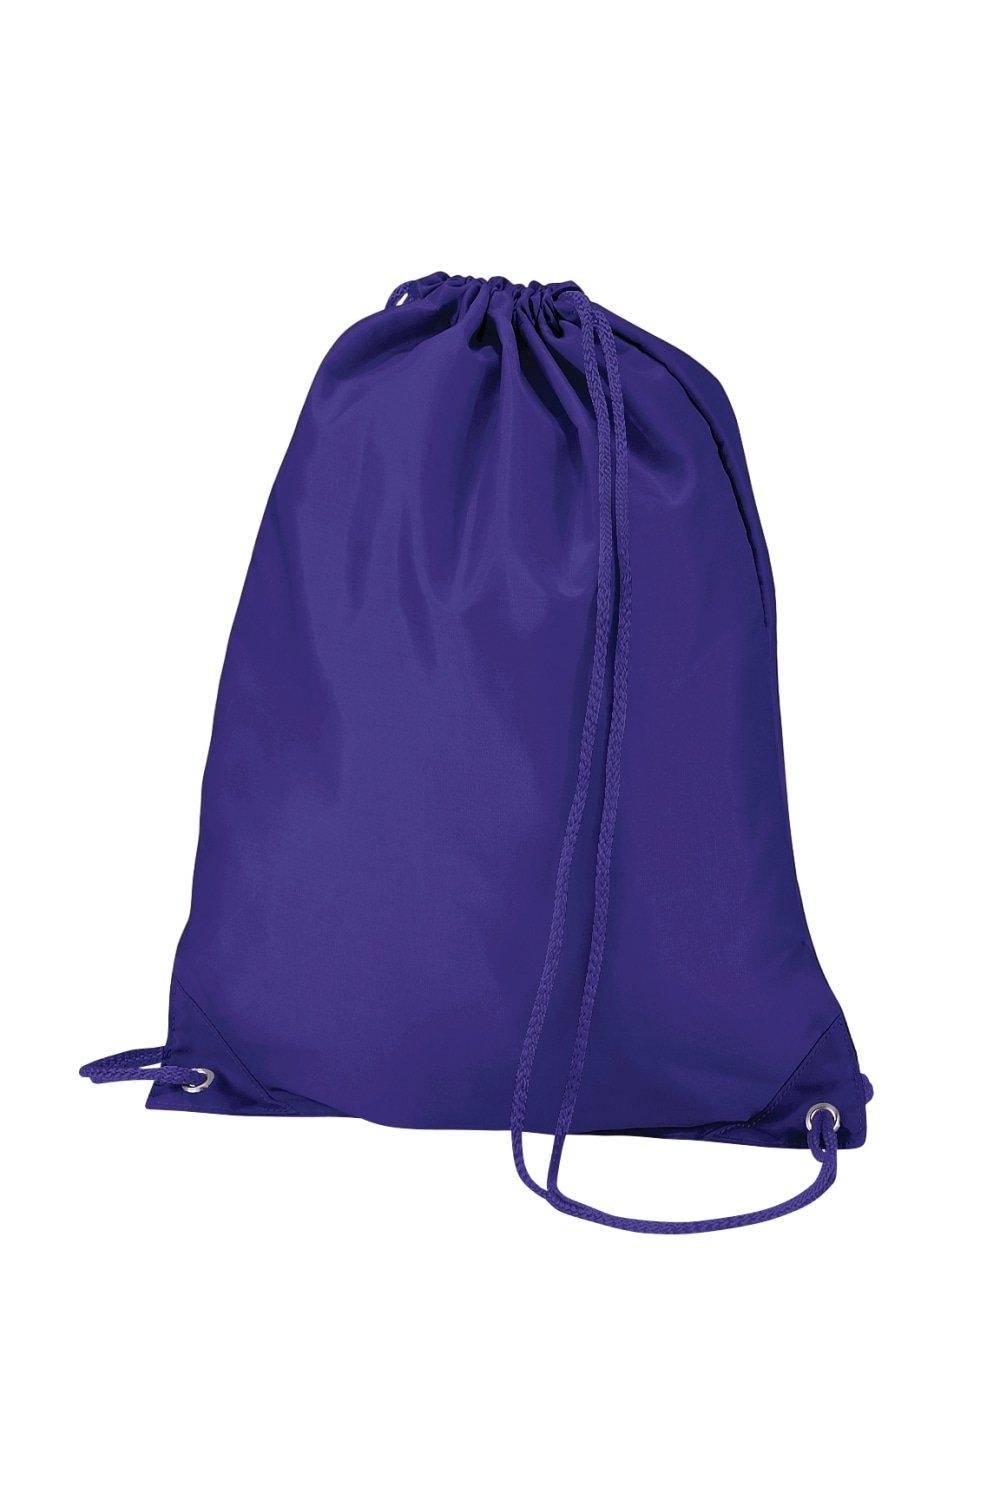 цена Сумка для переноски через плечо Gymsac - 7 литров (2 шт. в упаковке) Quadra, фиолетовый